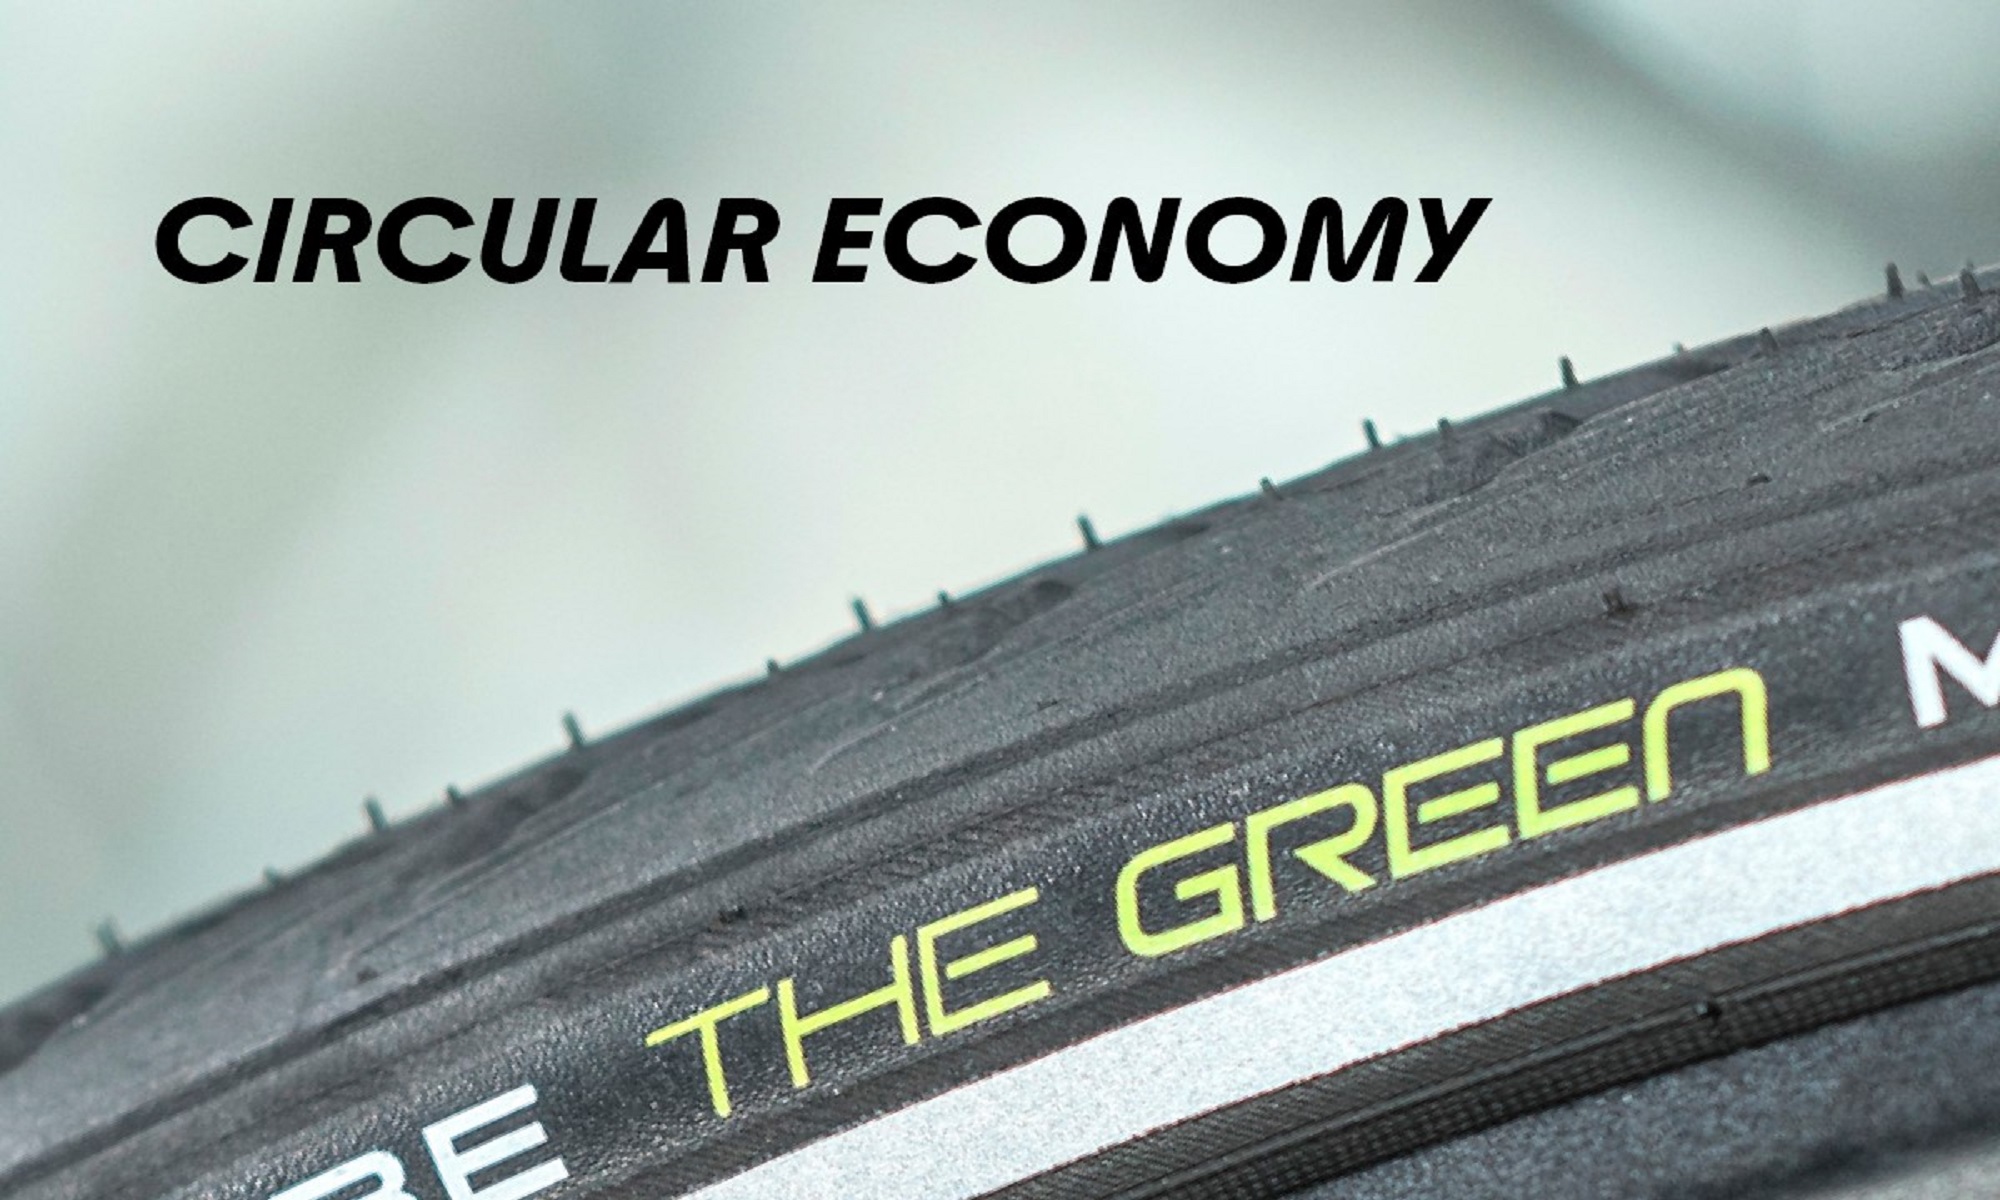 El neumático Green Marathon fue el primer neumático del mundo fabricado en parte con neumáticos usados. (Foto: Schwalbe).